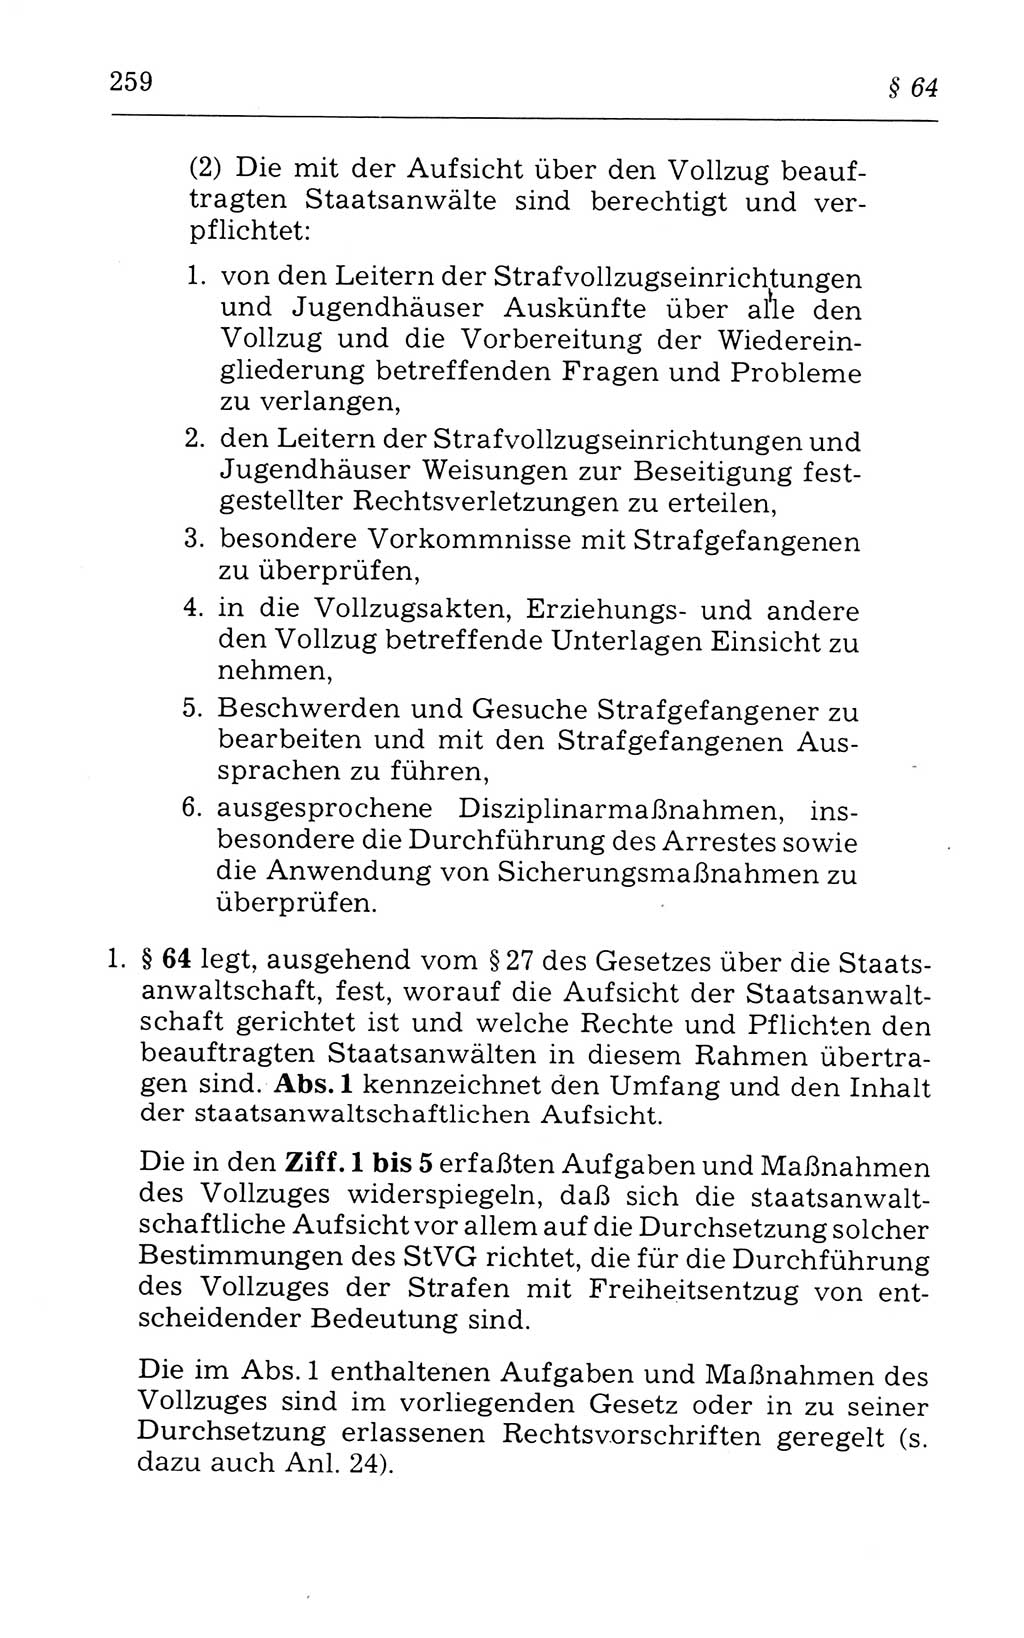 Kommentar zum Strafvollzugsgesetz [(StVG) Deutsche Demokratische Republik (DDR)] 1980, Seite 259 (Komm. StVG DDR 1980, S. 259)